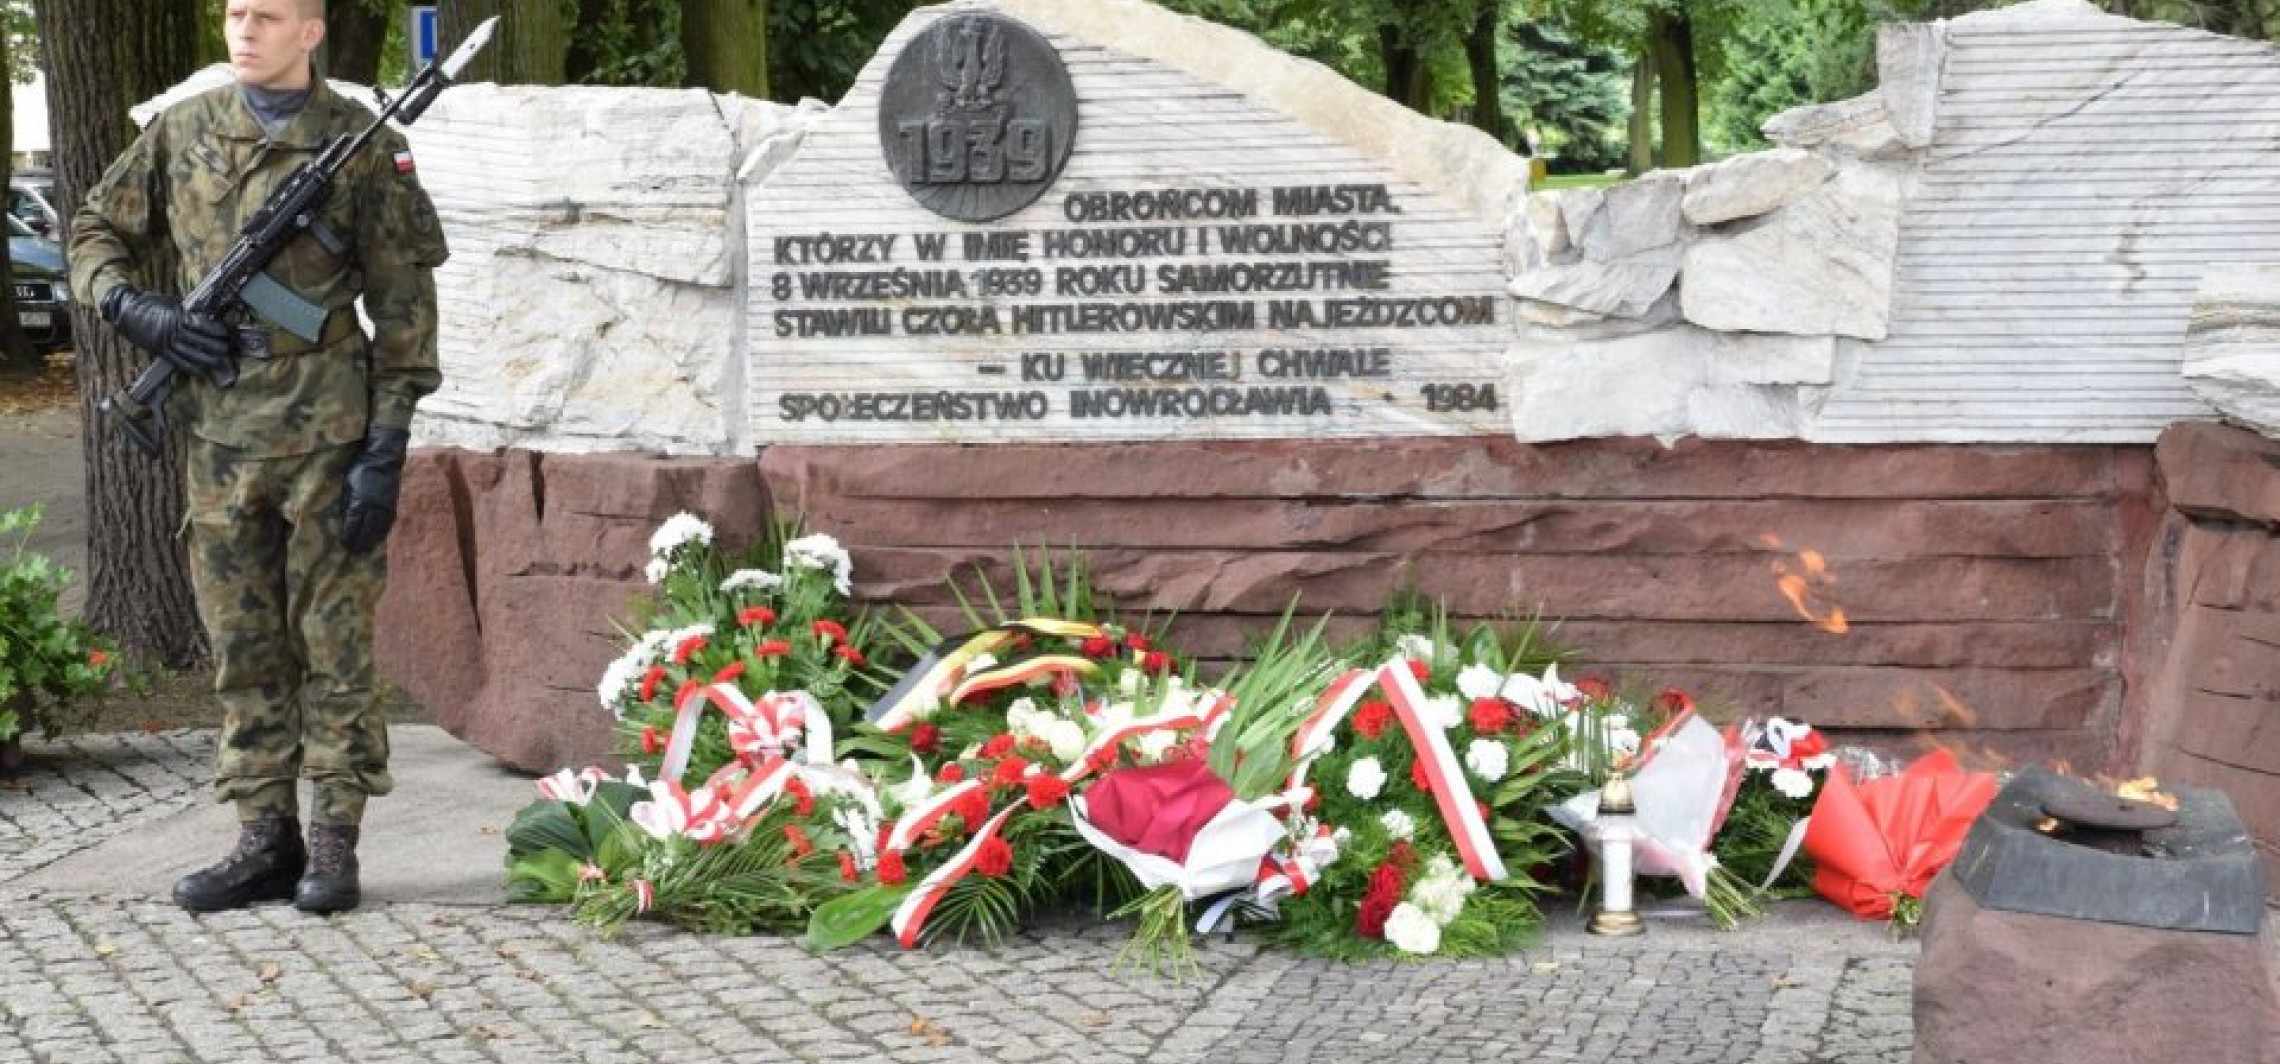 Inowrocław - Tak uczcimy 84. rocznicę wybuchu II wojny światowej